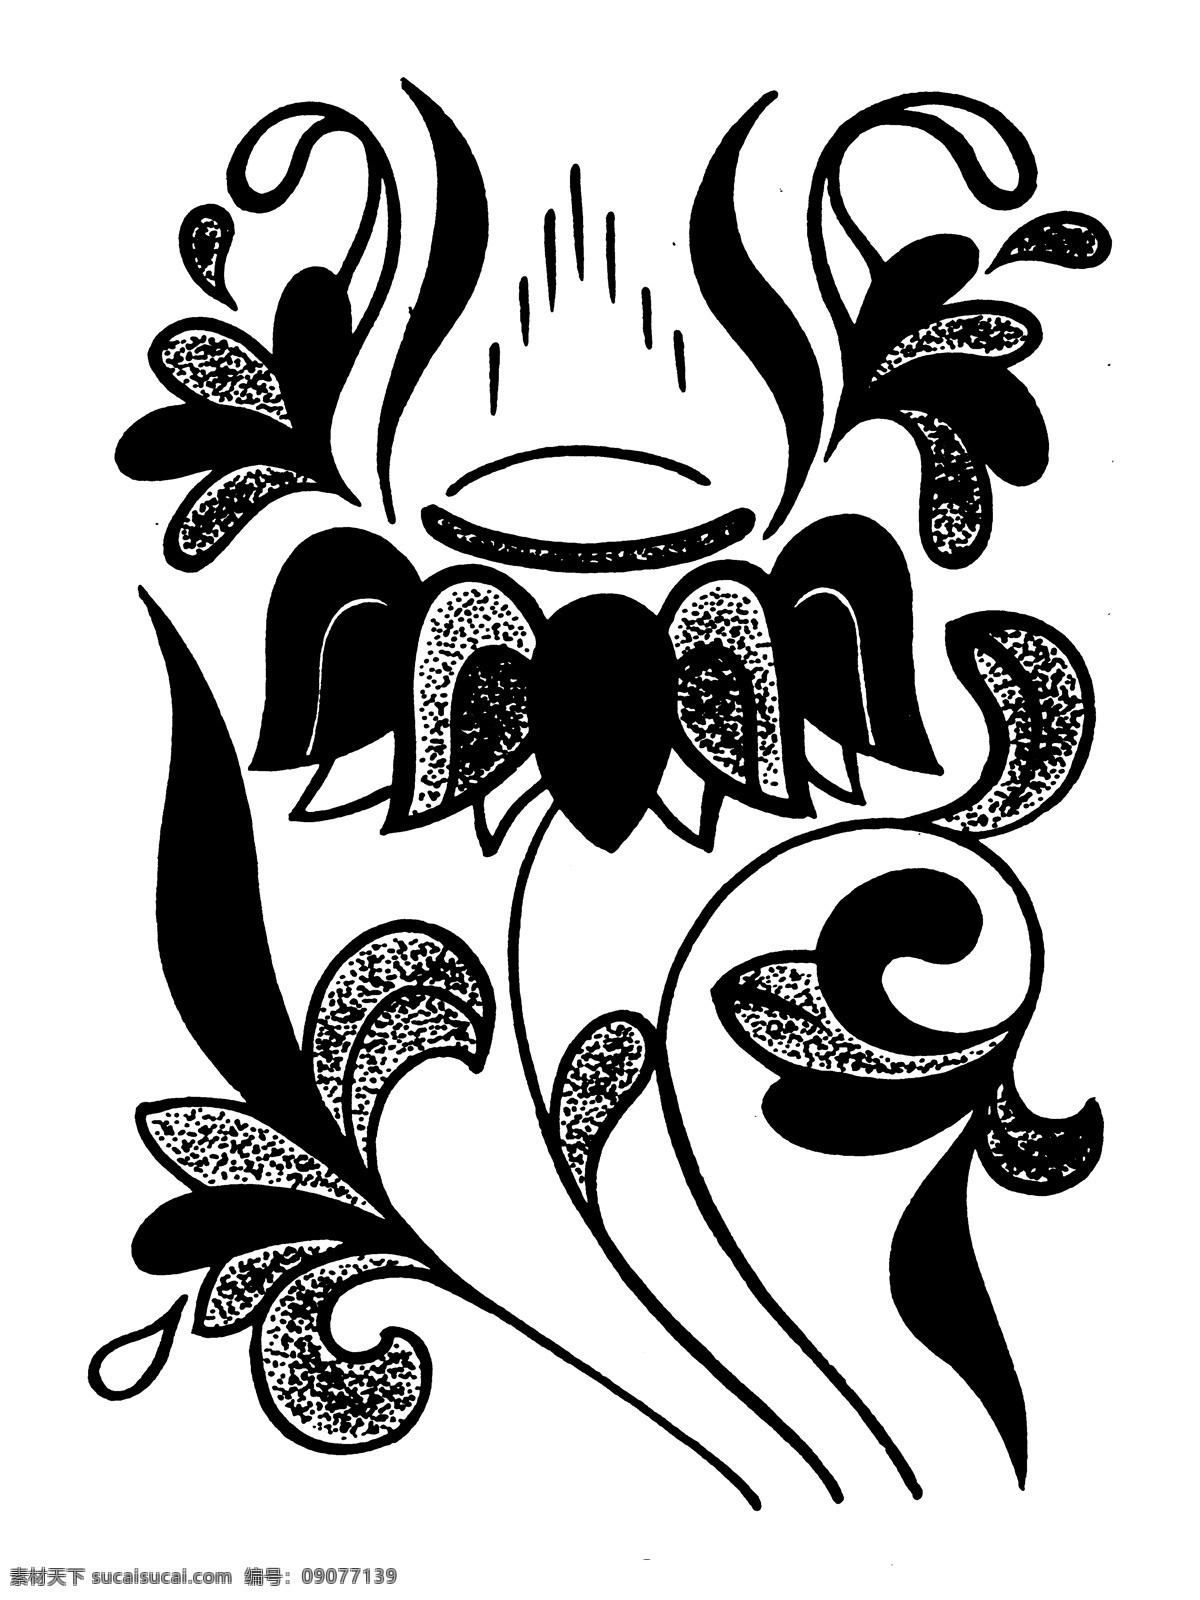 花鸟图案 魏晋 南北朝 图案 中国 传统 中国传统图案 设计素材 装饰图案 书画美术 白色